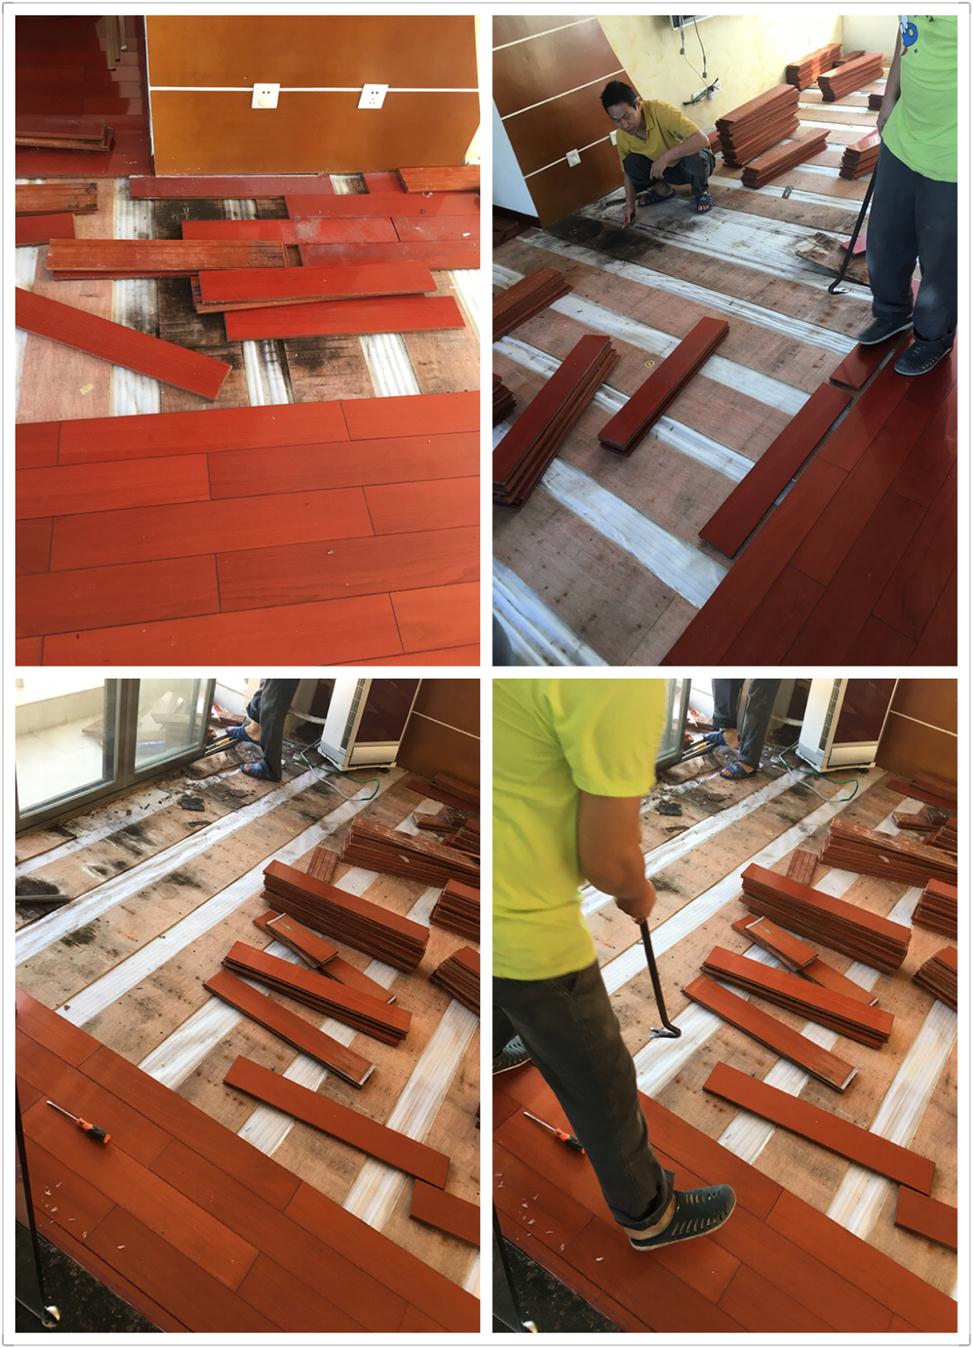 惠州惠阳 木地板起拱维修具体服务